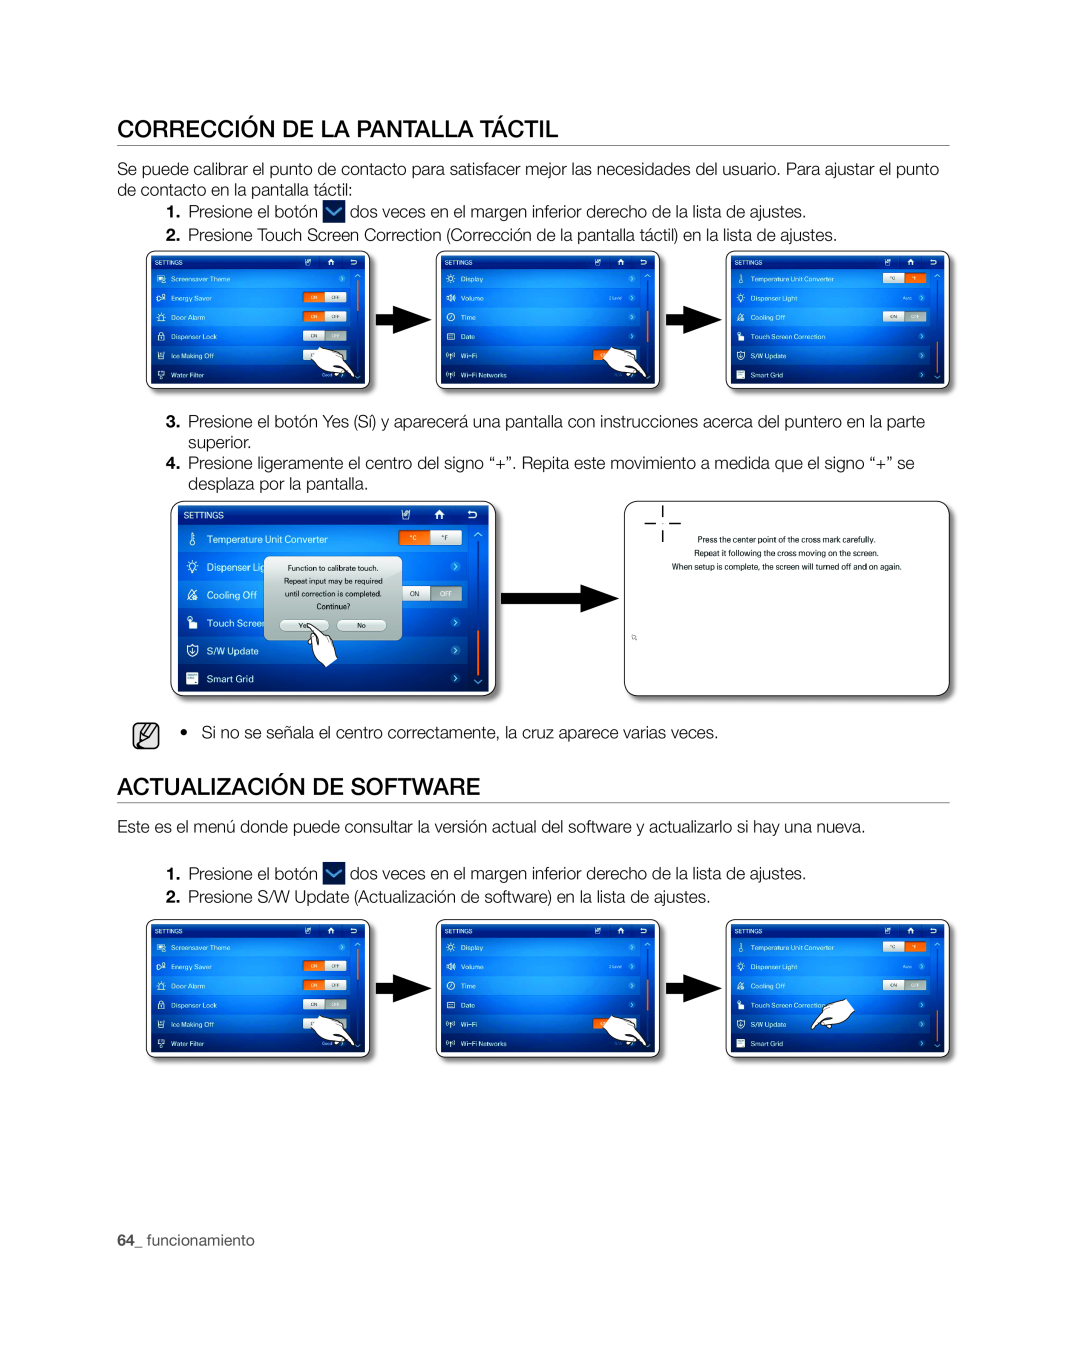 Samsung RSG309** user manual Corrección de la pantalla táctil, Actualización de software, funcionamiento 